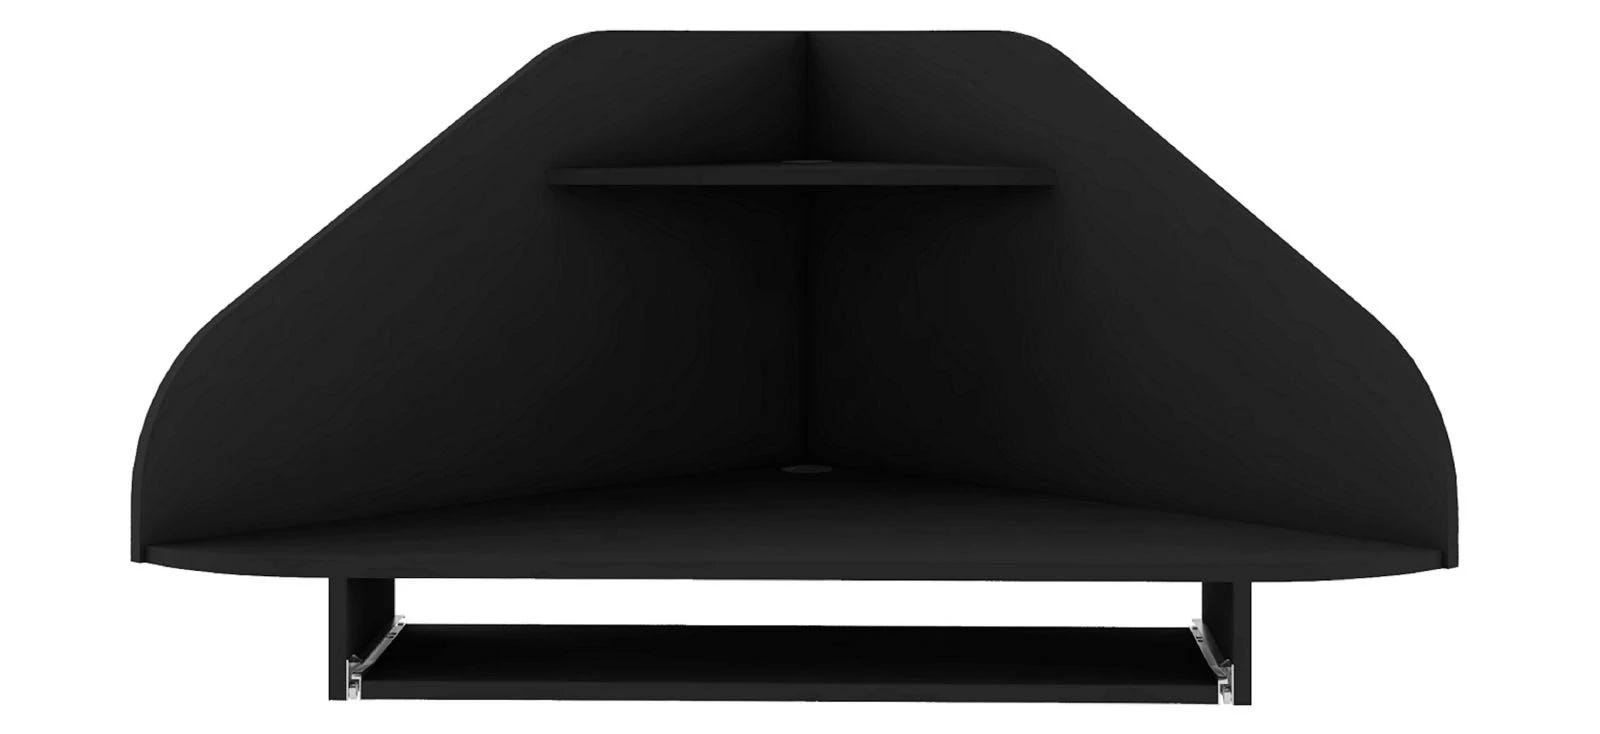 Manhattan Comfort Black Floating Corner Desk with Keyboard Shelf | Image